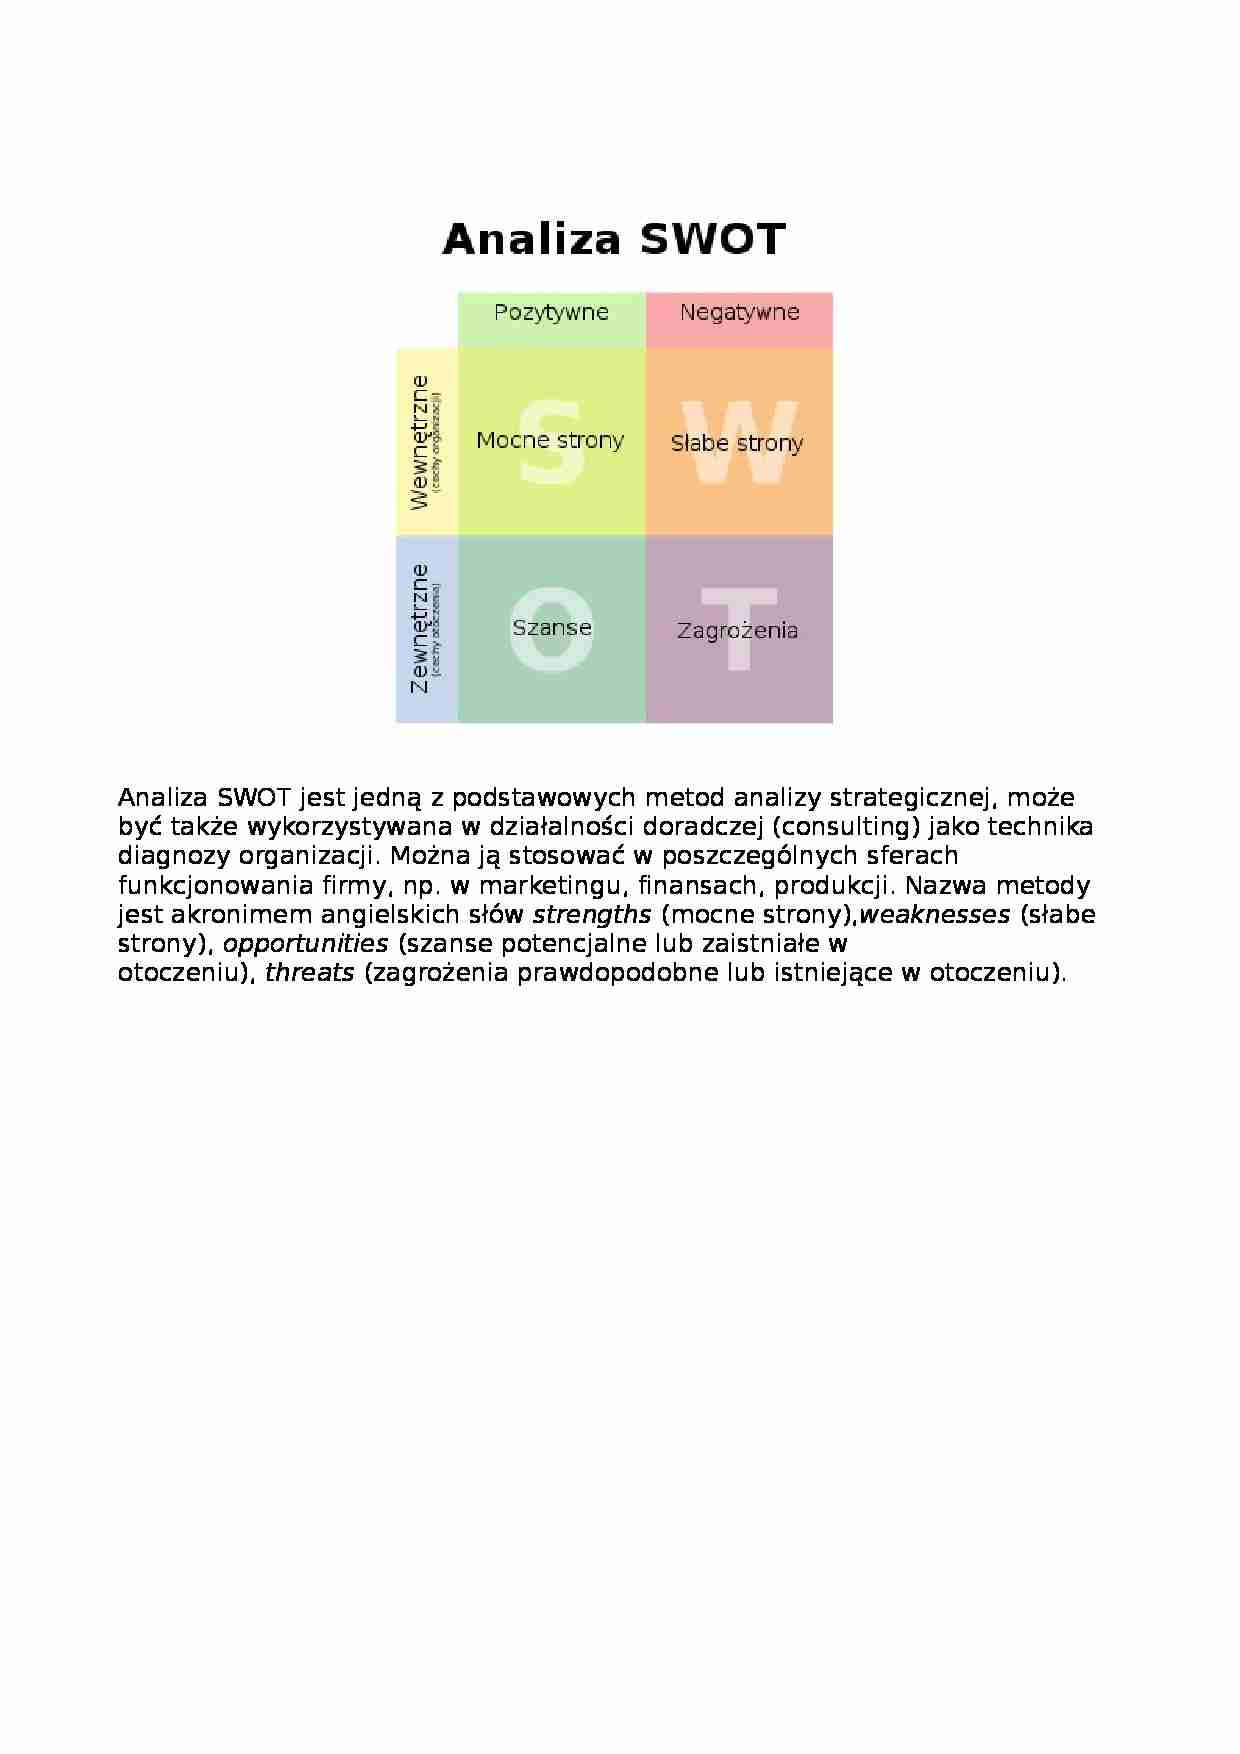 Analiza SWOT - definicja - Analiza strategiczna - strona 1